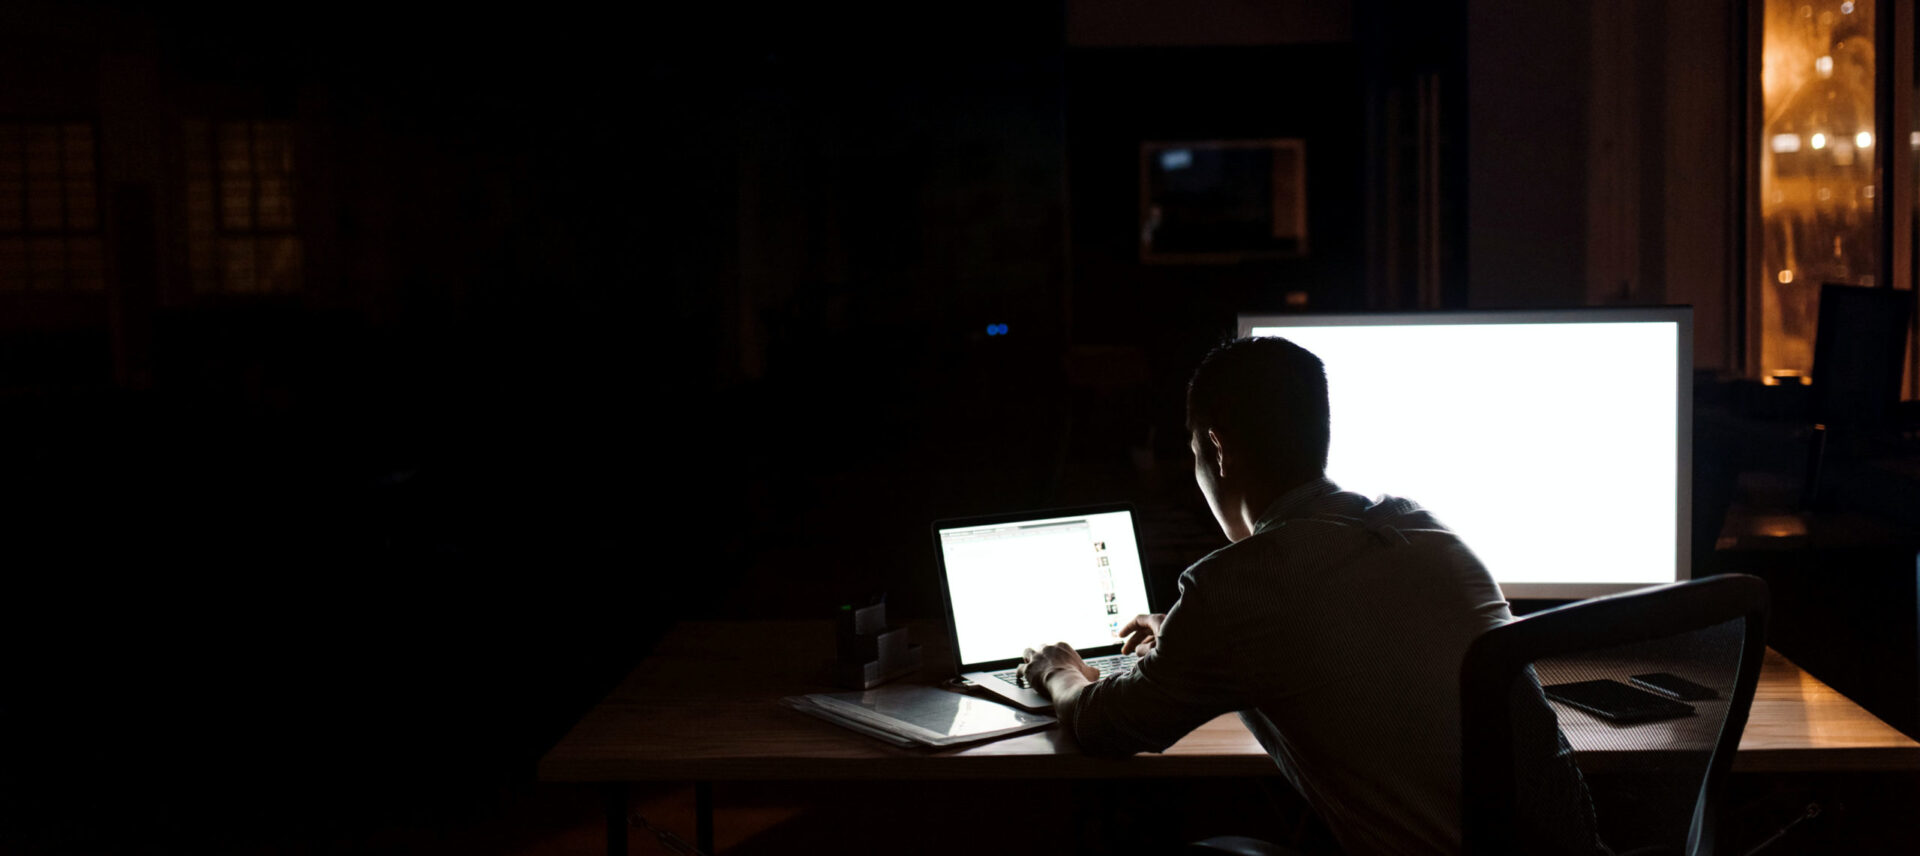 designer working alone in the dark